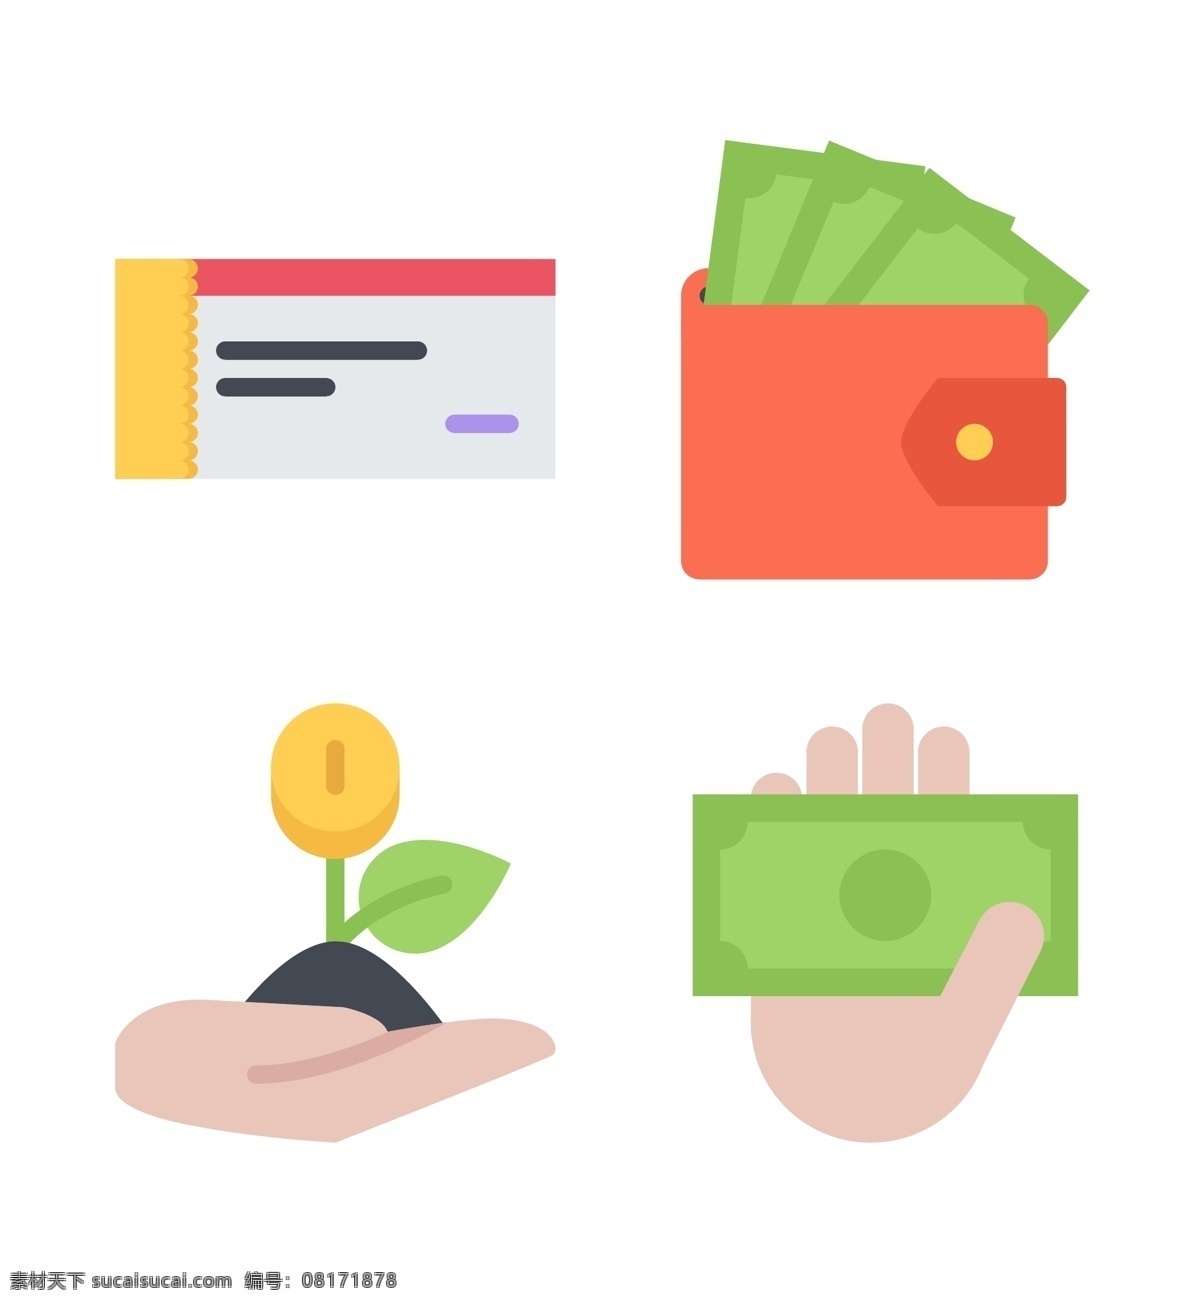 钱包 金融 icon 图标素材 卡通图案 钱包金融 纸币 货币 矢量图 图案素材 扁平化矢量 图案